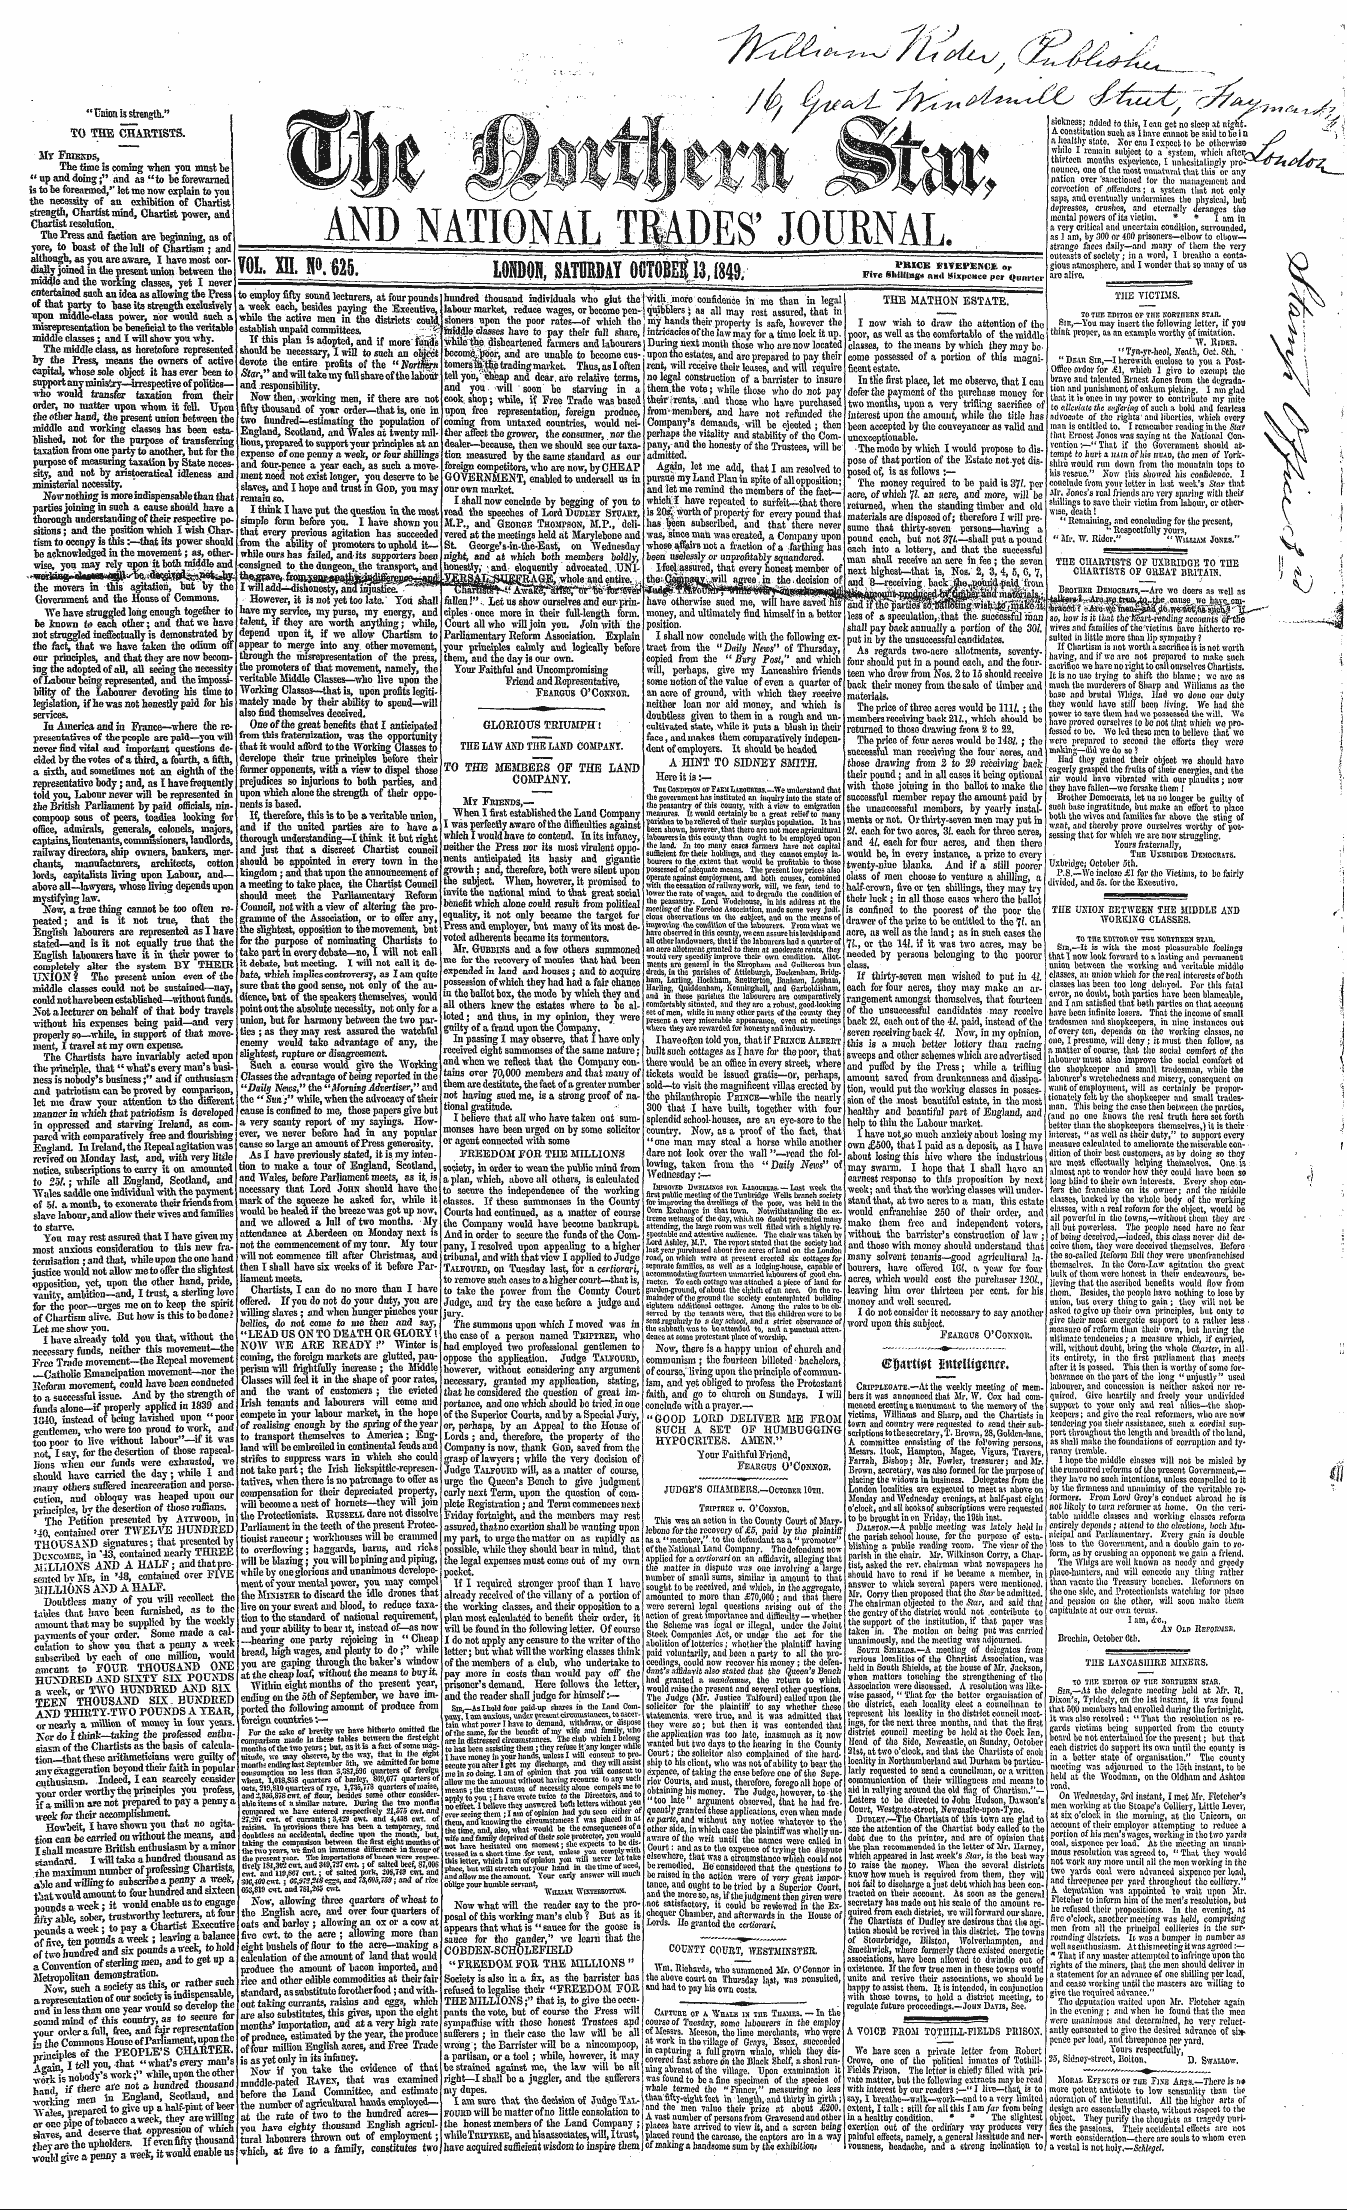 Northern Star (1837-1852): jS F Y, 3rd edition - U, V .